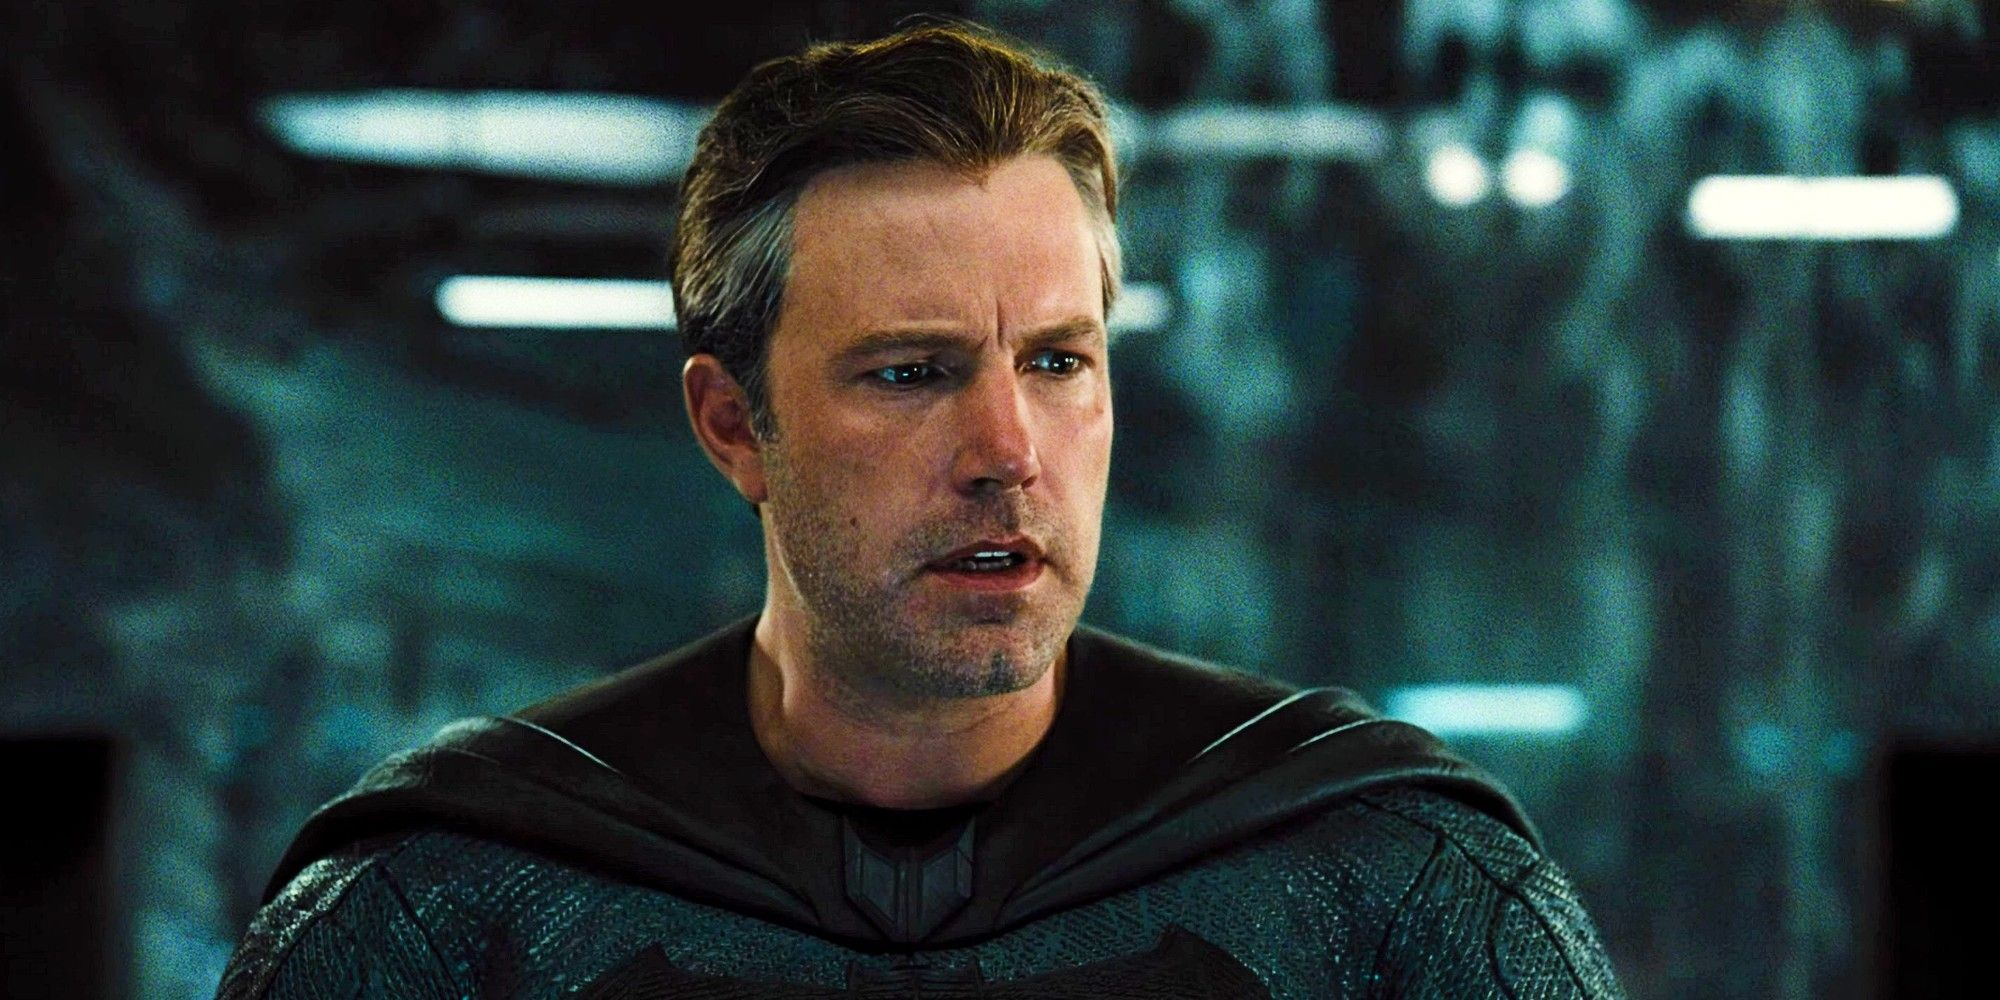 La película cancelada de Batman de Ben Affleck es llamada "F ** king Awesome" por Insider a medida que surgen nuevos detalles